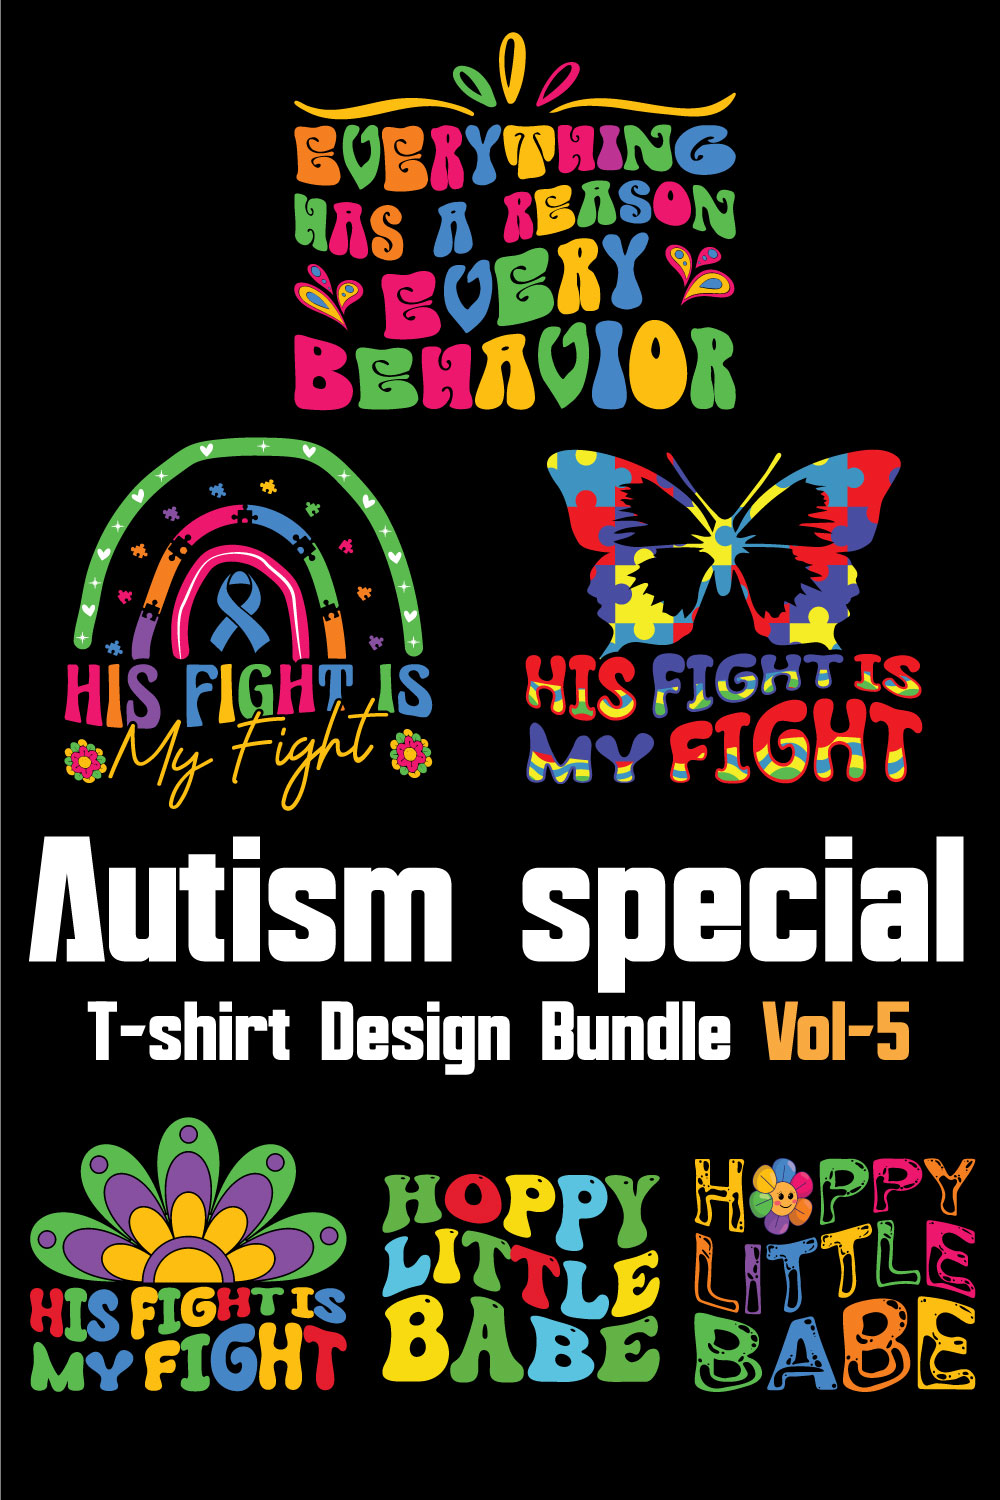 Autism Special T-shirt Design Bundle Vol-5 pinterest preview image.